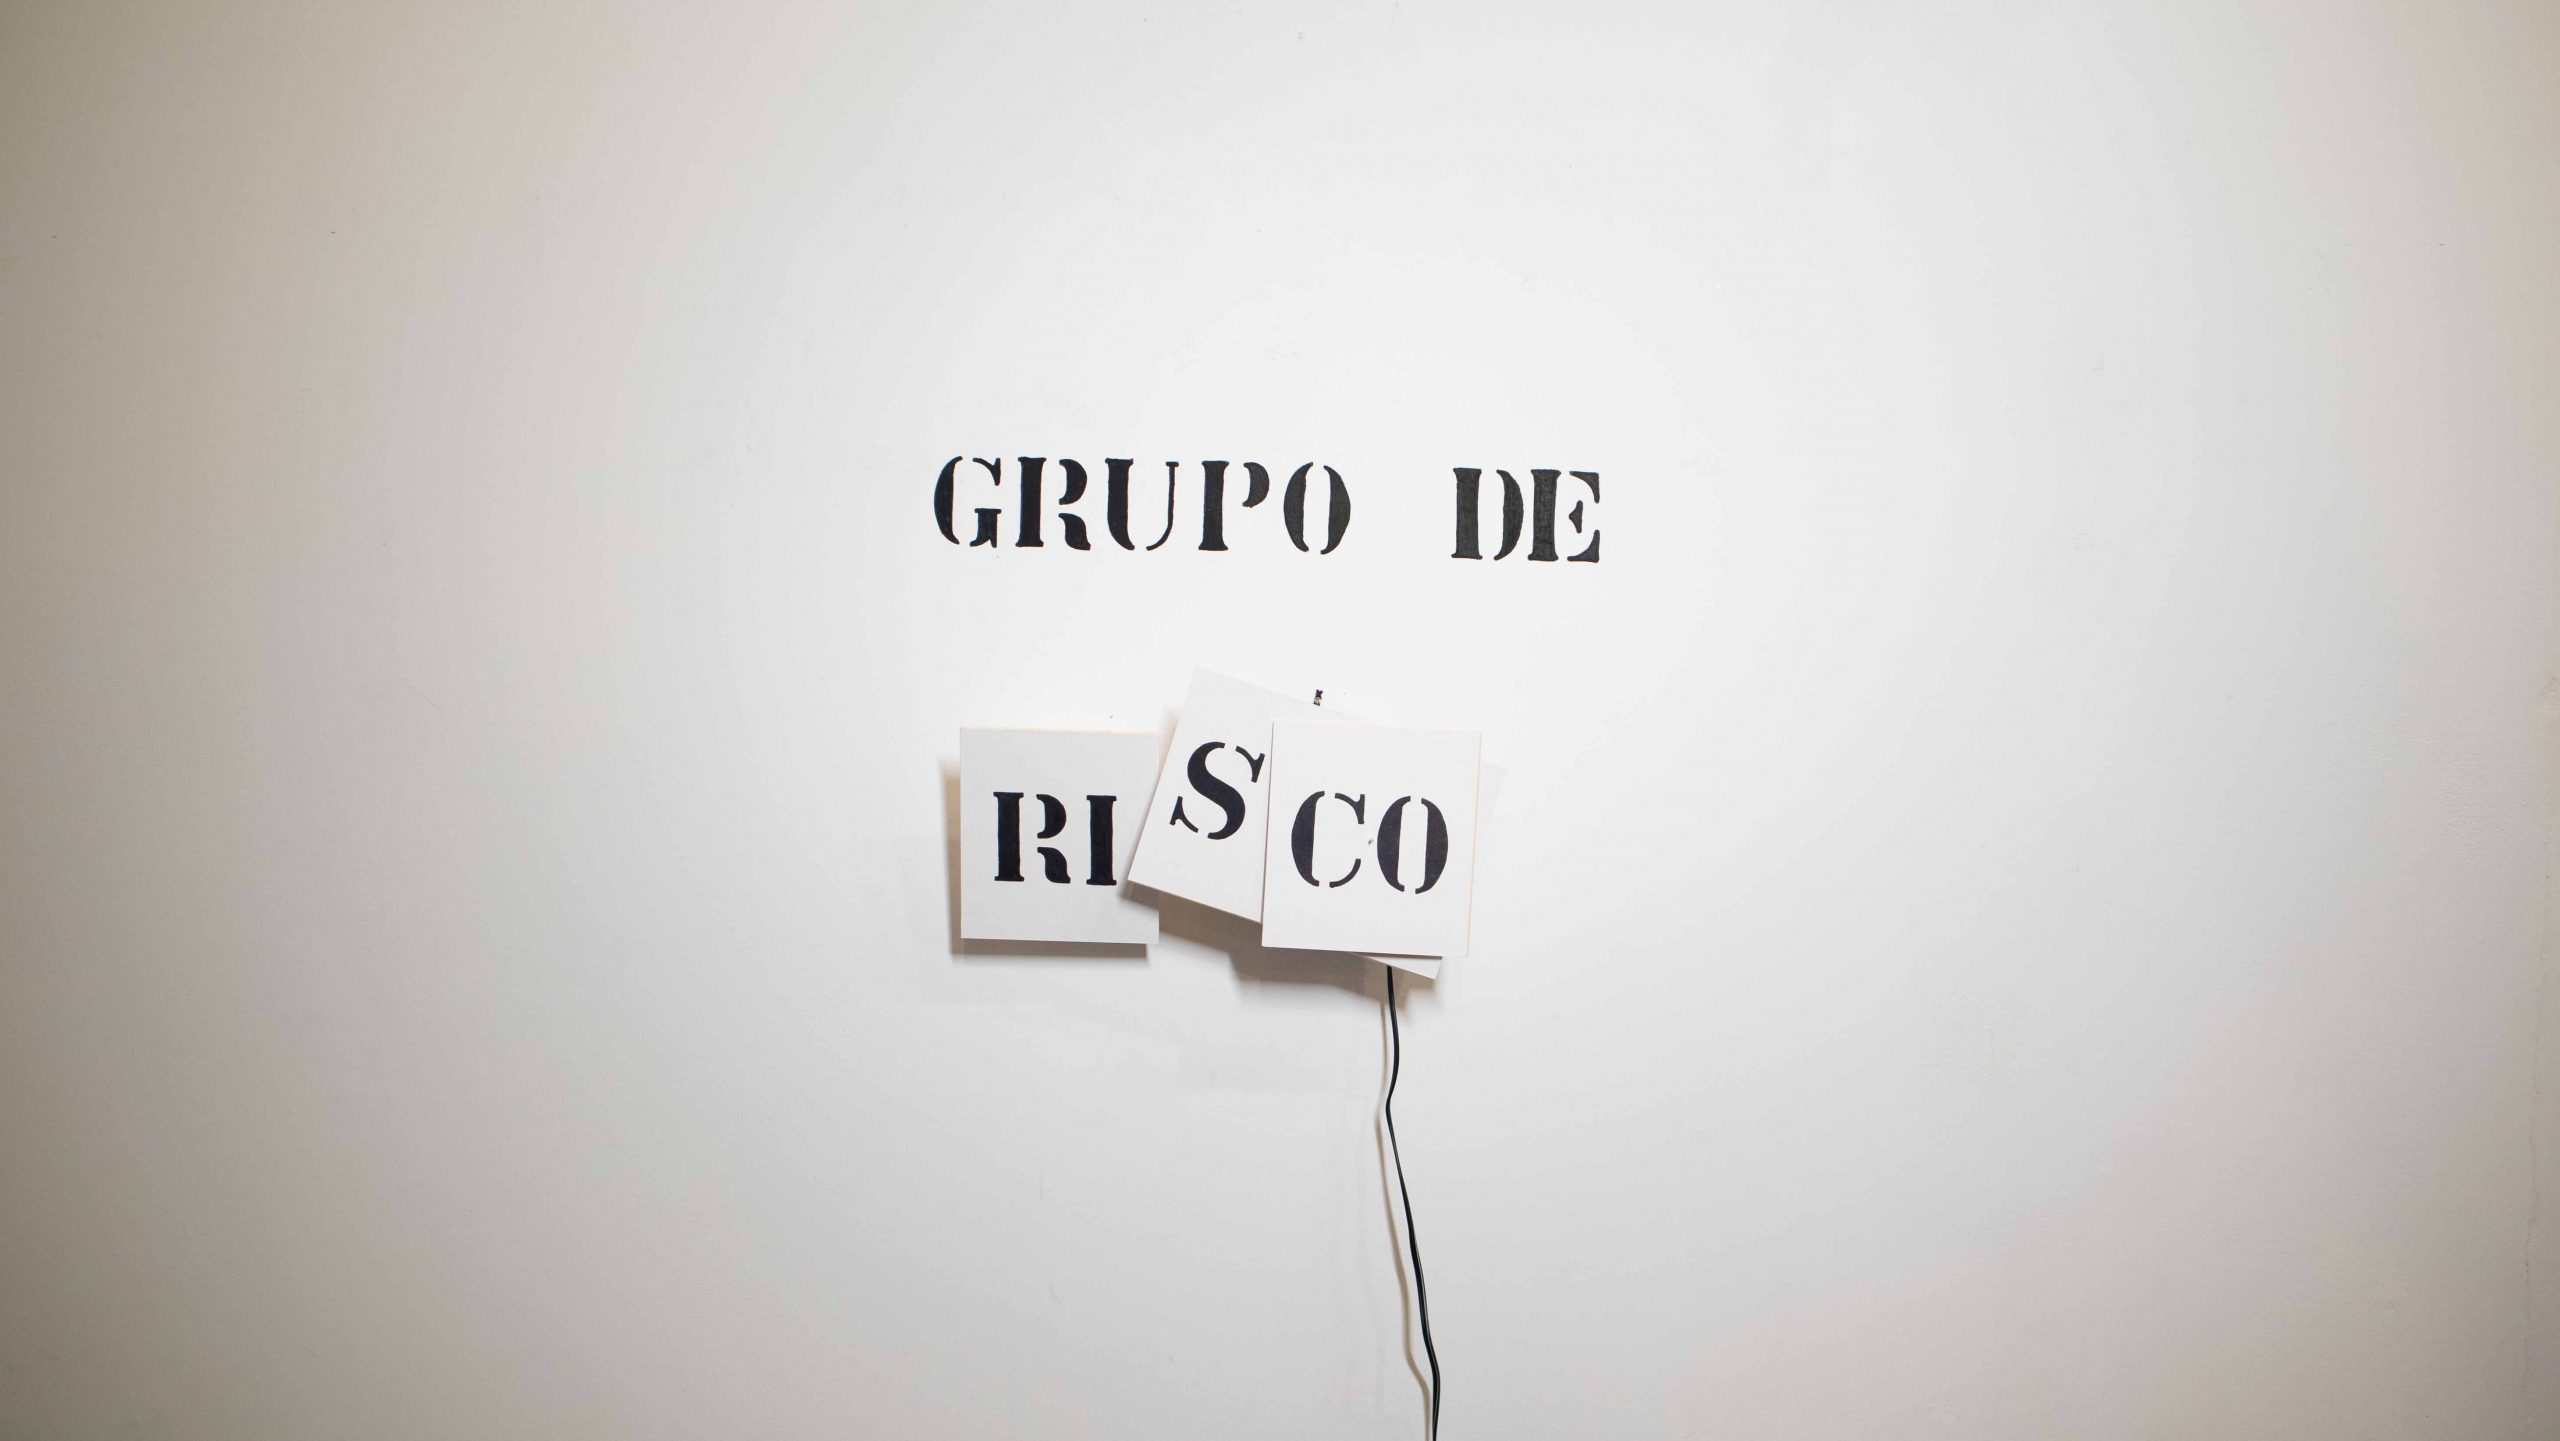 Grupo de Risco, Jan M.O., 2020. Objeto, motor, escrita sob papel e parede, 33x30x7cm.